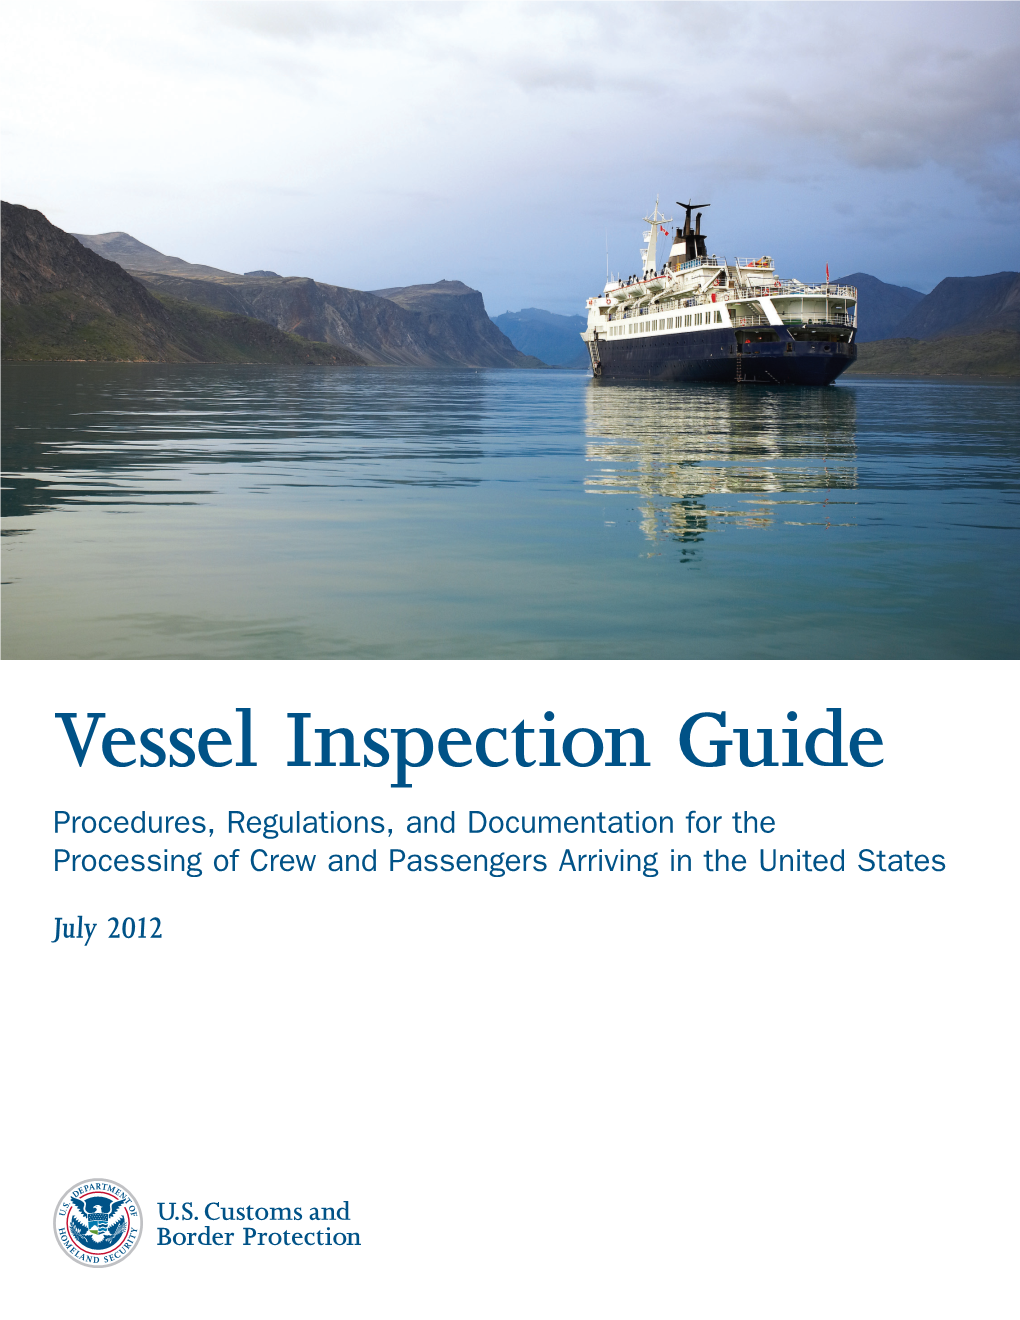 CBP Vessel Inspection Guide